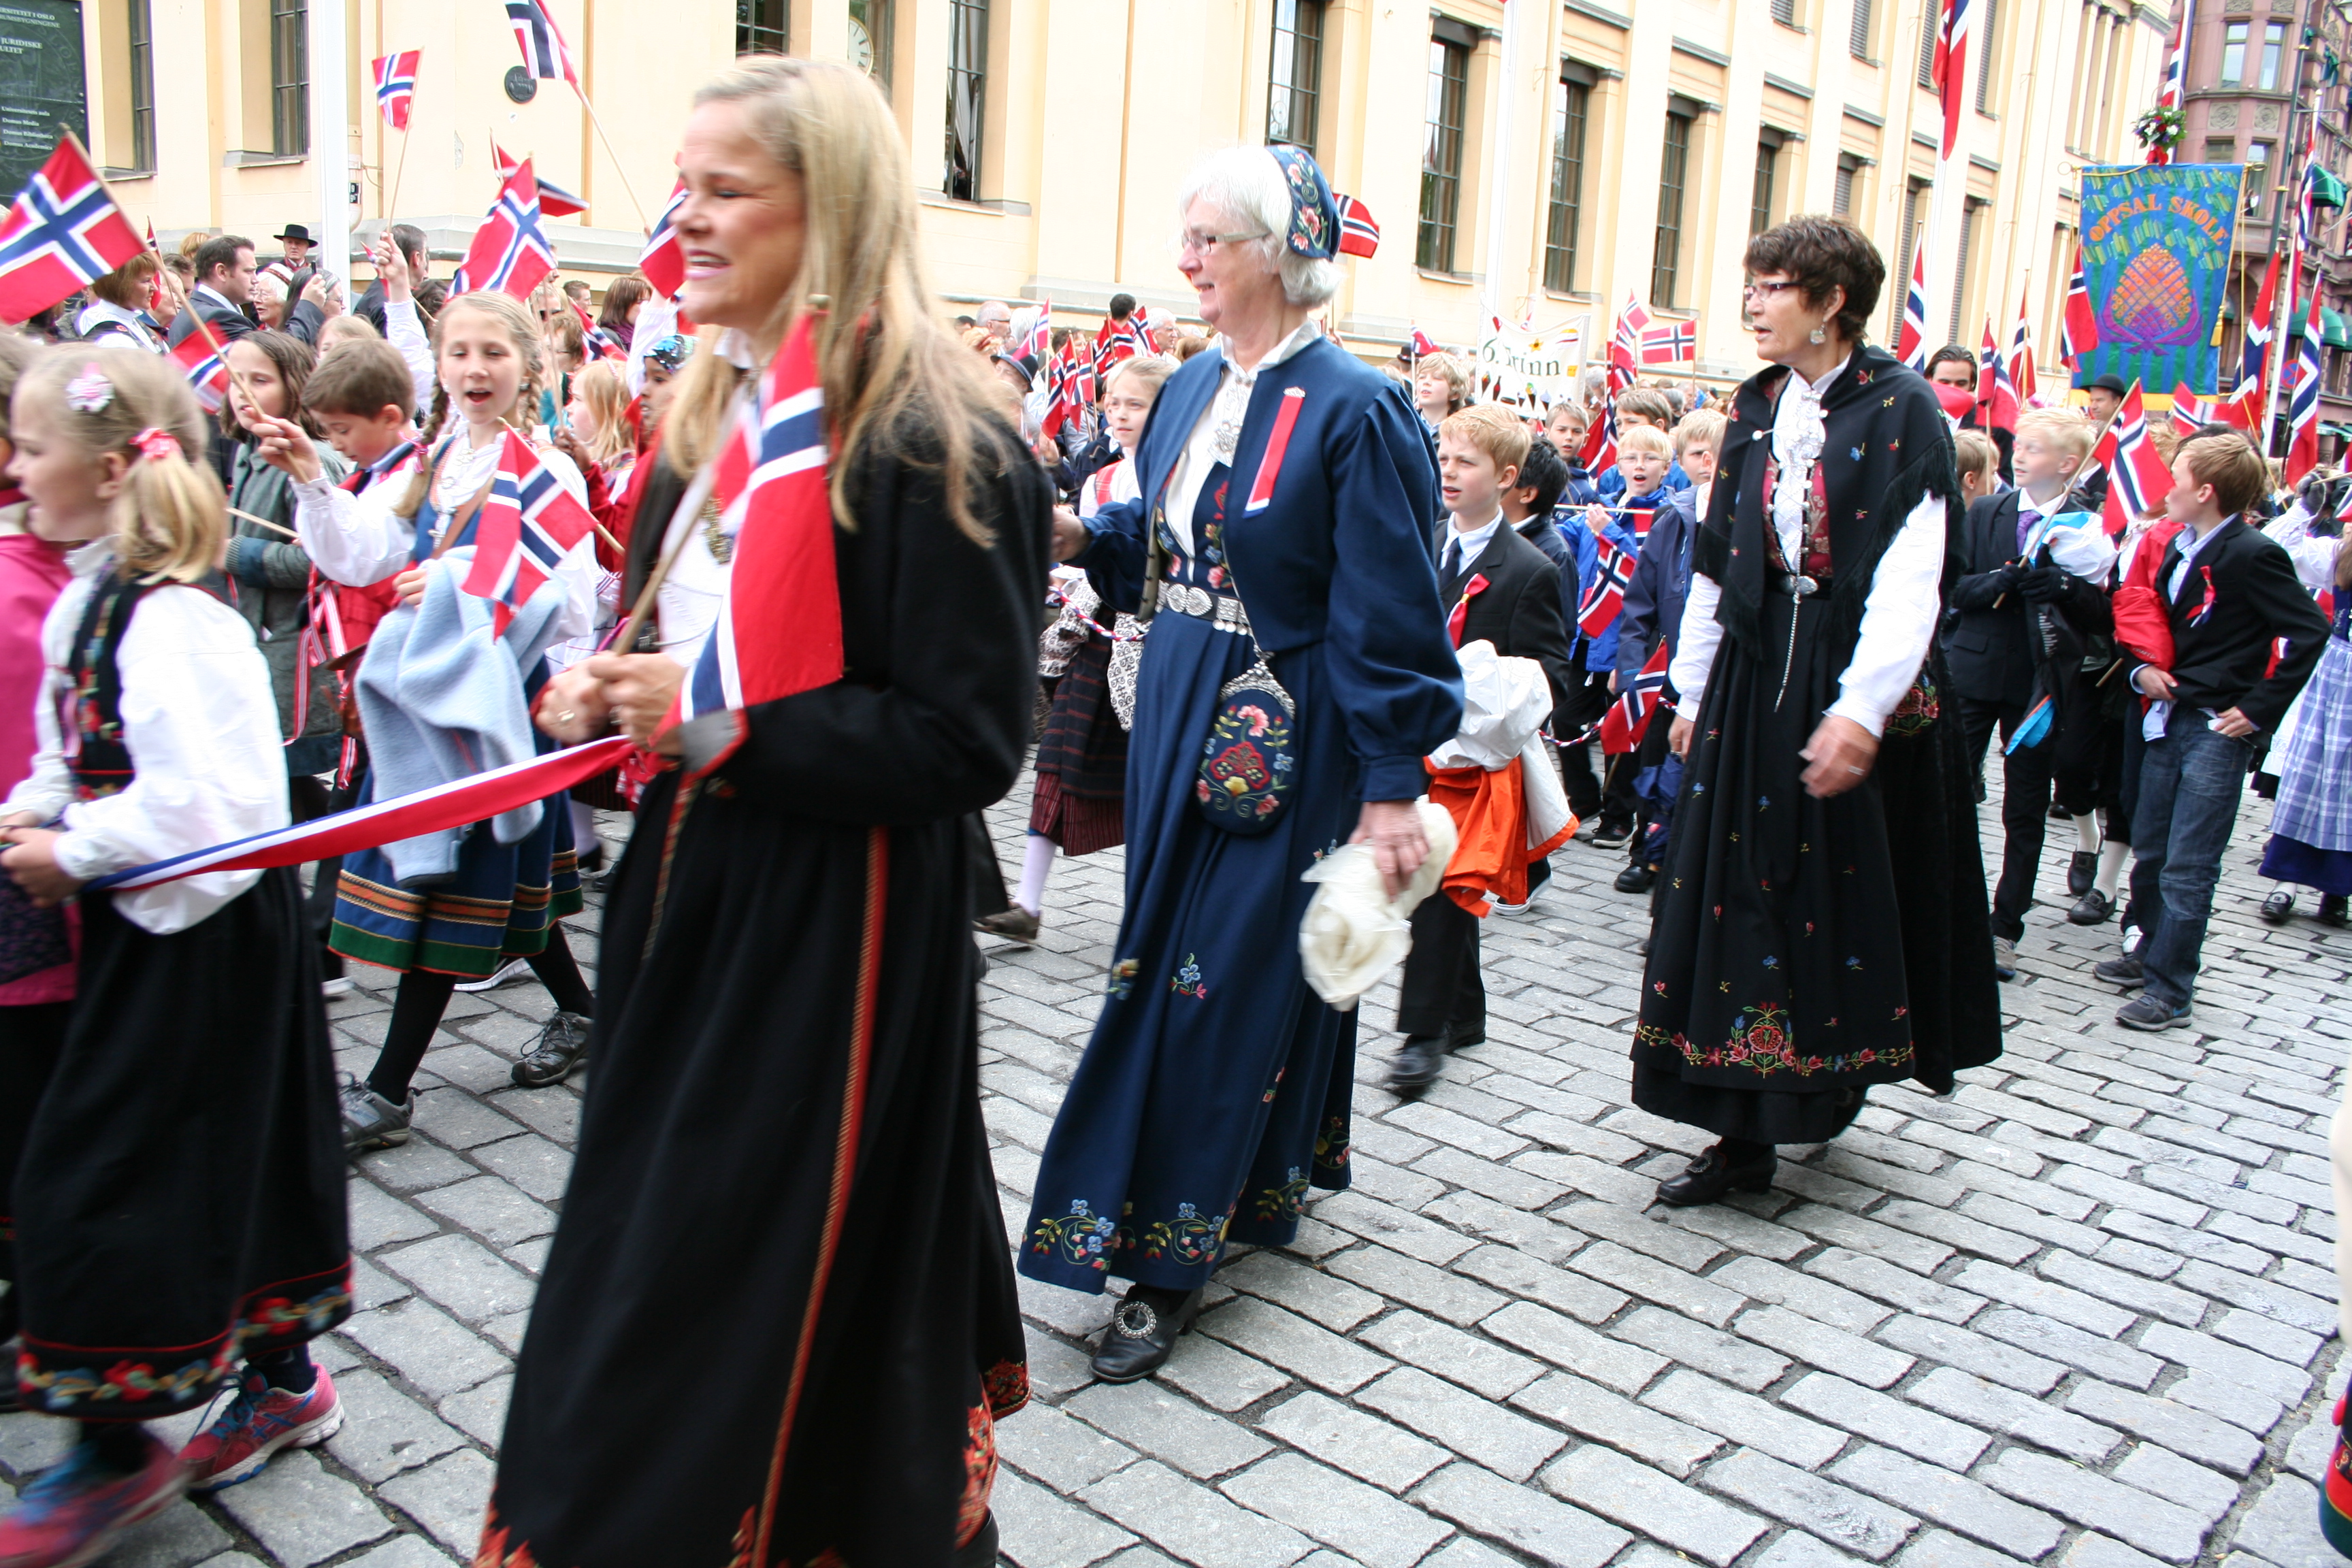 Пестрое население. Норвегия норвежцы. Жители Дании это датчане. Норвежцы народы Норвегии. Культура Дании.